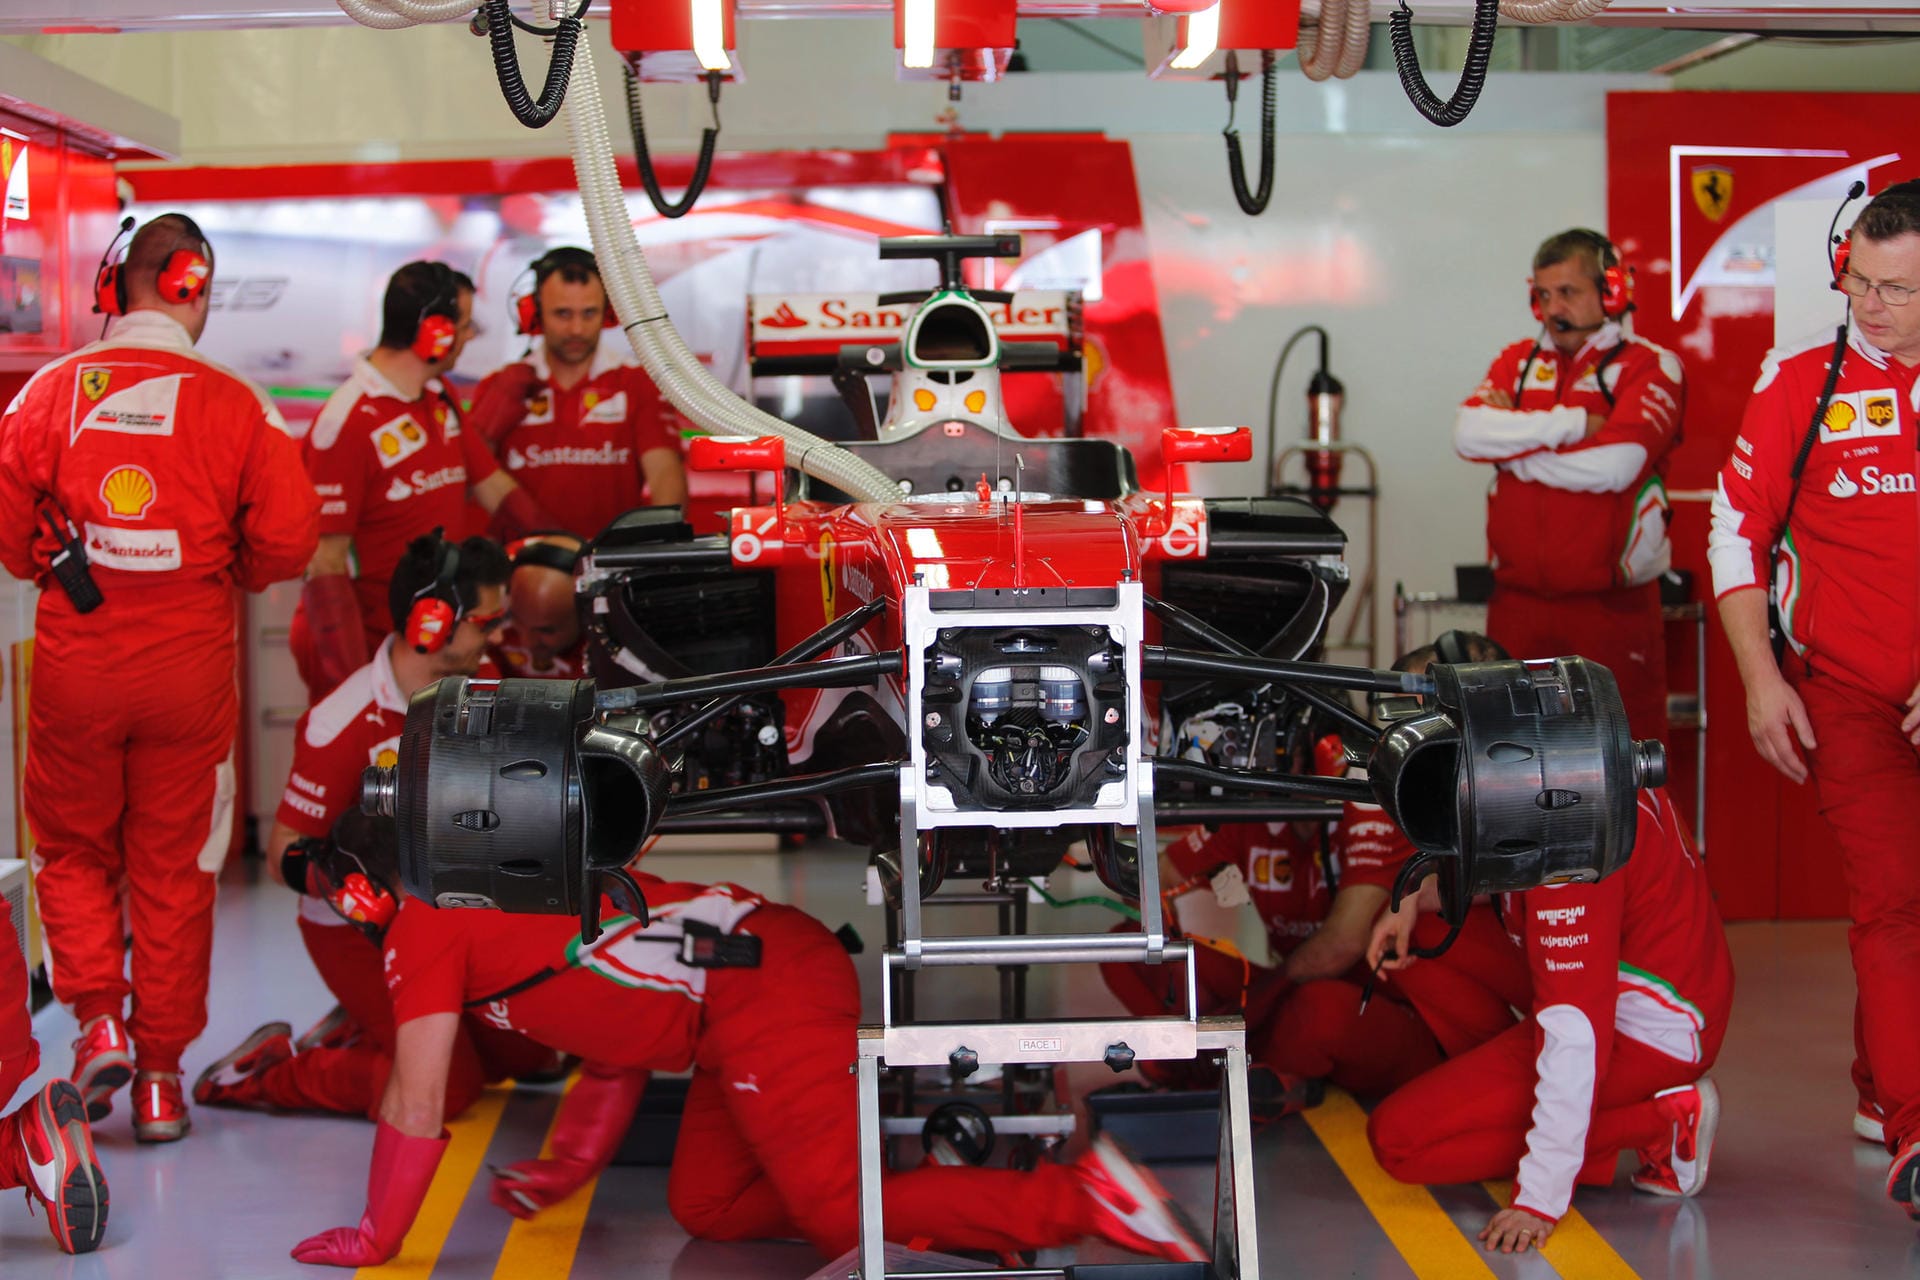 Zwar raste Vettel im zweiten freien Training auf den zweiten Platz. Es gab aber wieder Probleme mit seinem Auto. Die Mechaniker mussten ein neues Getriebe verbauen. Die Folge: Startplatz-Strafe für den Heppenheimer im Rennen.